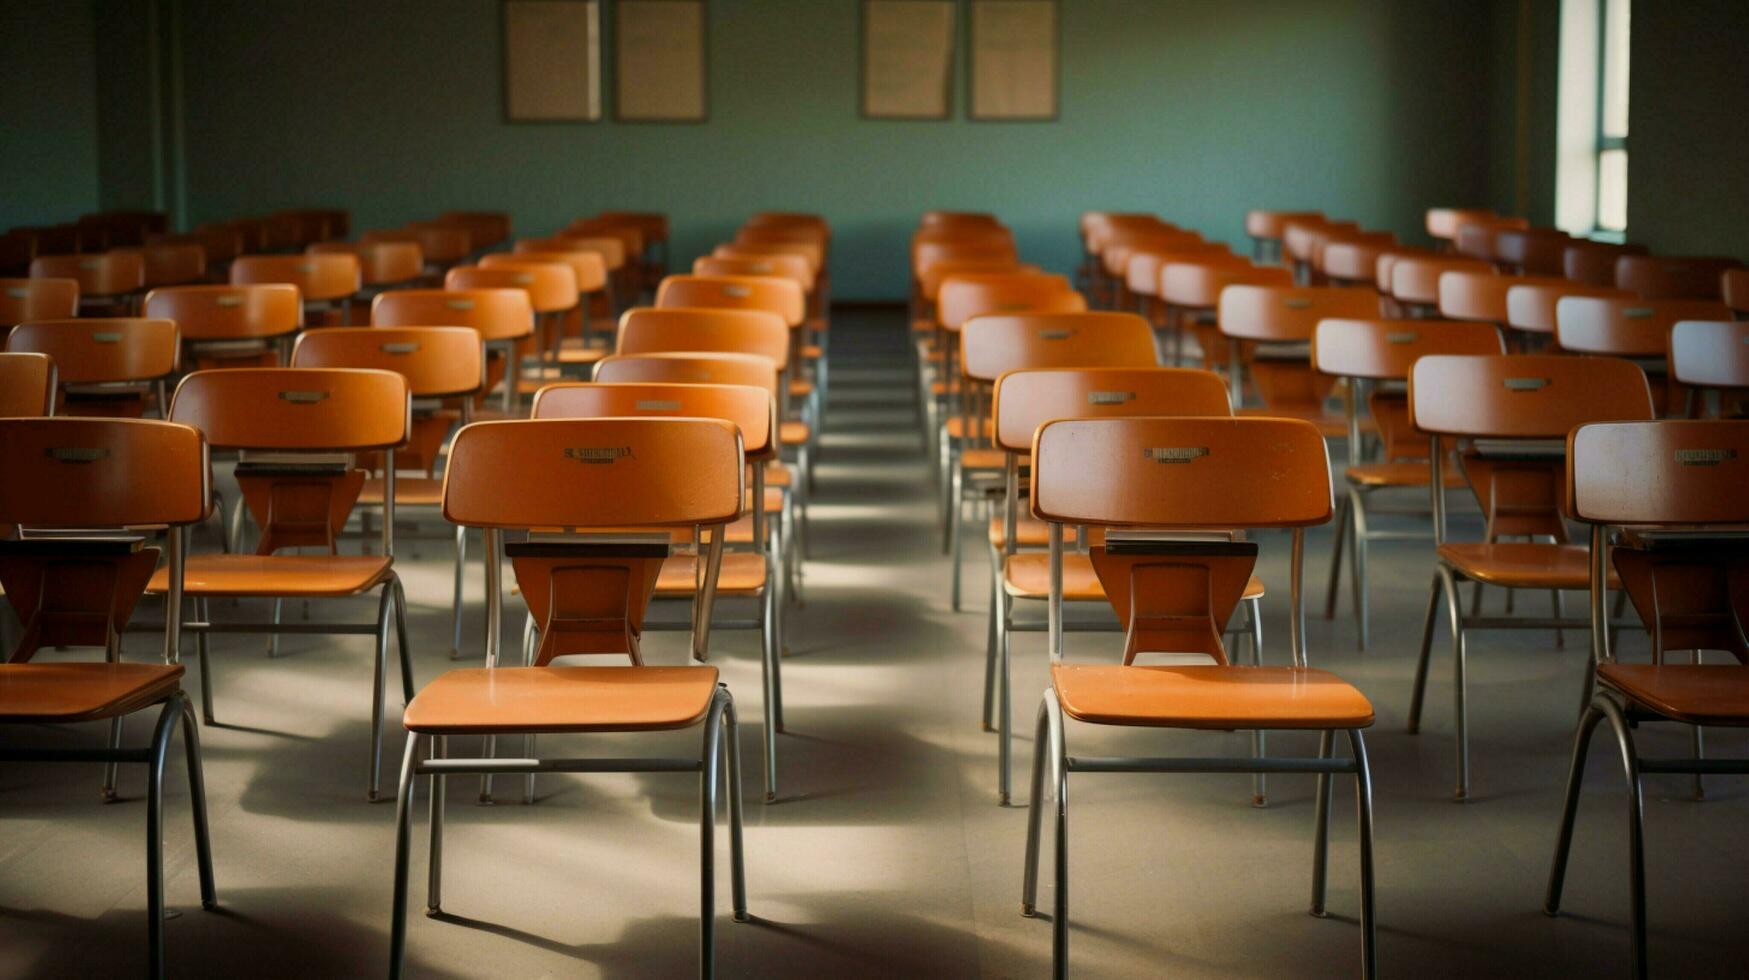 moderne salle de cours vide chaises attendre pour élèves photo